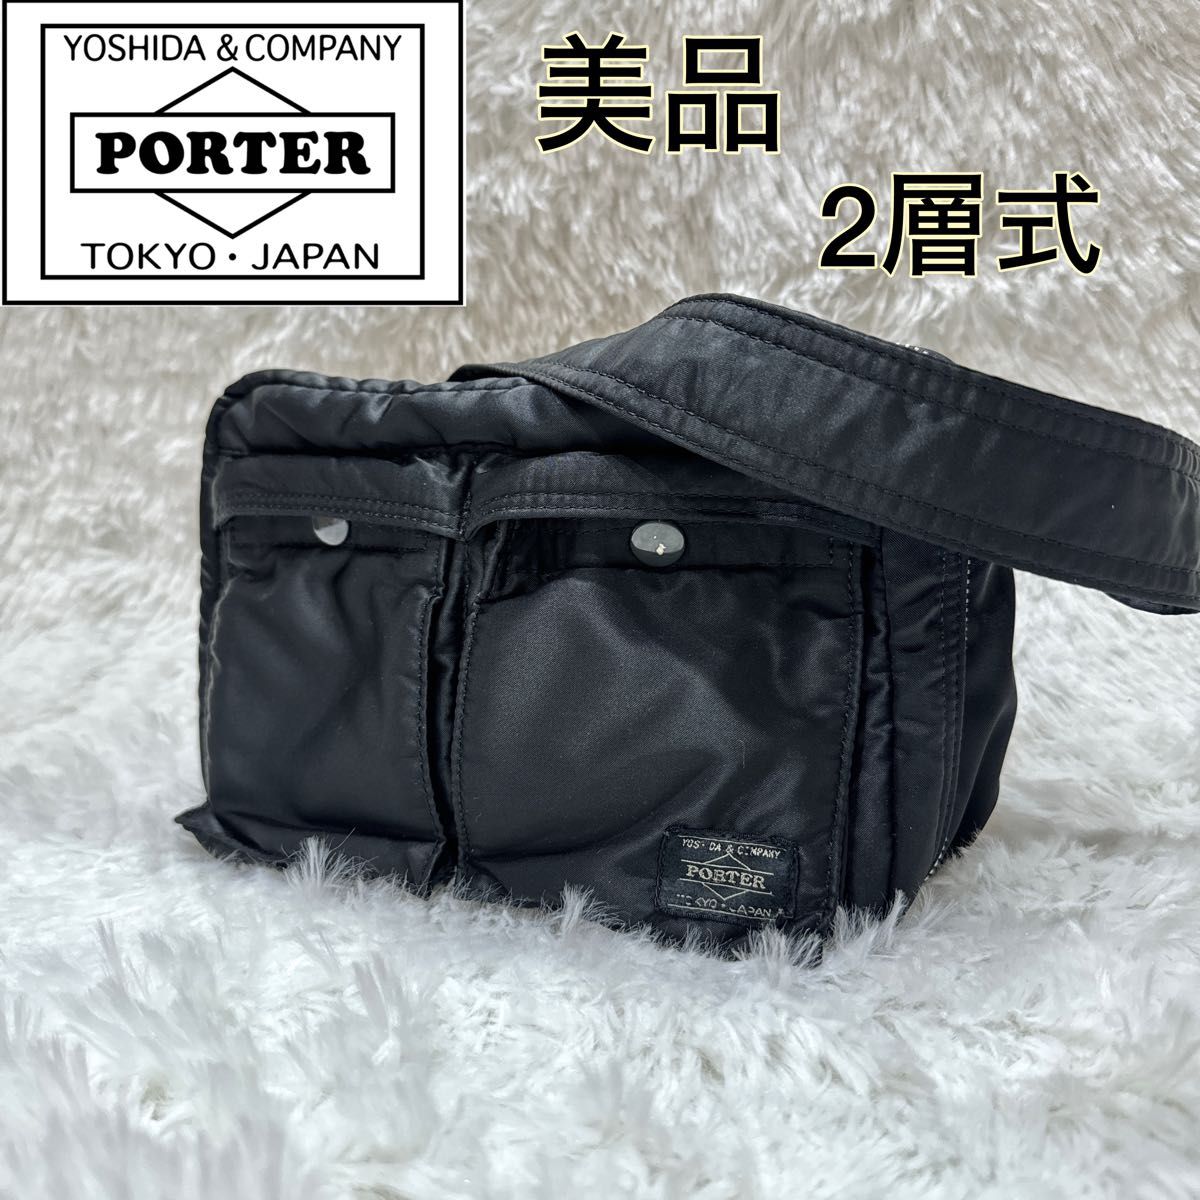 【美品】ポーター 吉田カバン ショルダーバッグ L タンカー 2層式 ブラック PORTER 黒 ナイロン